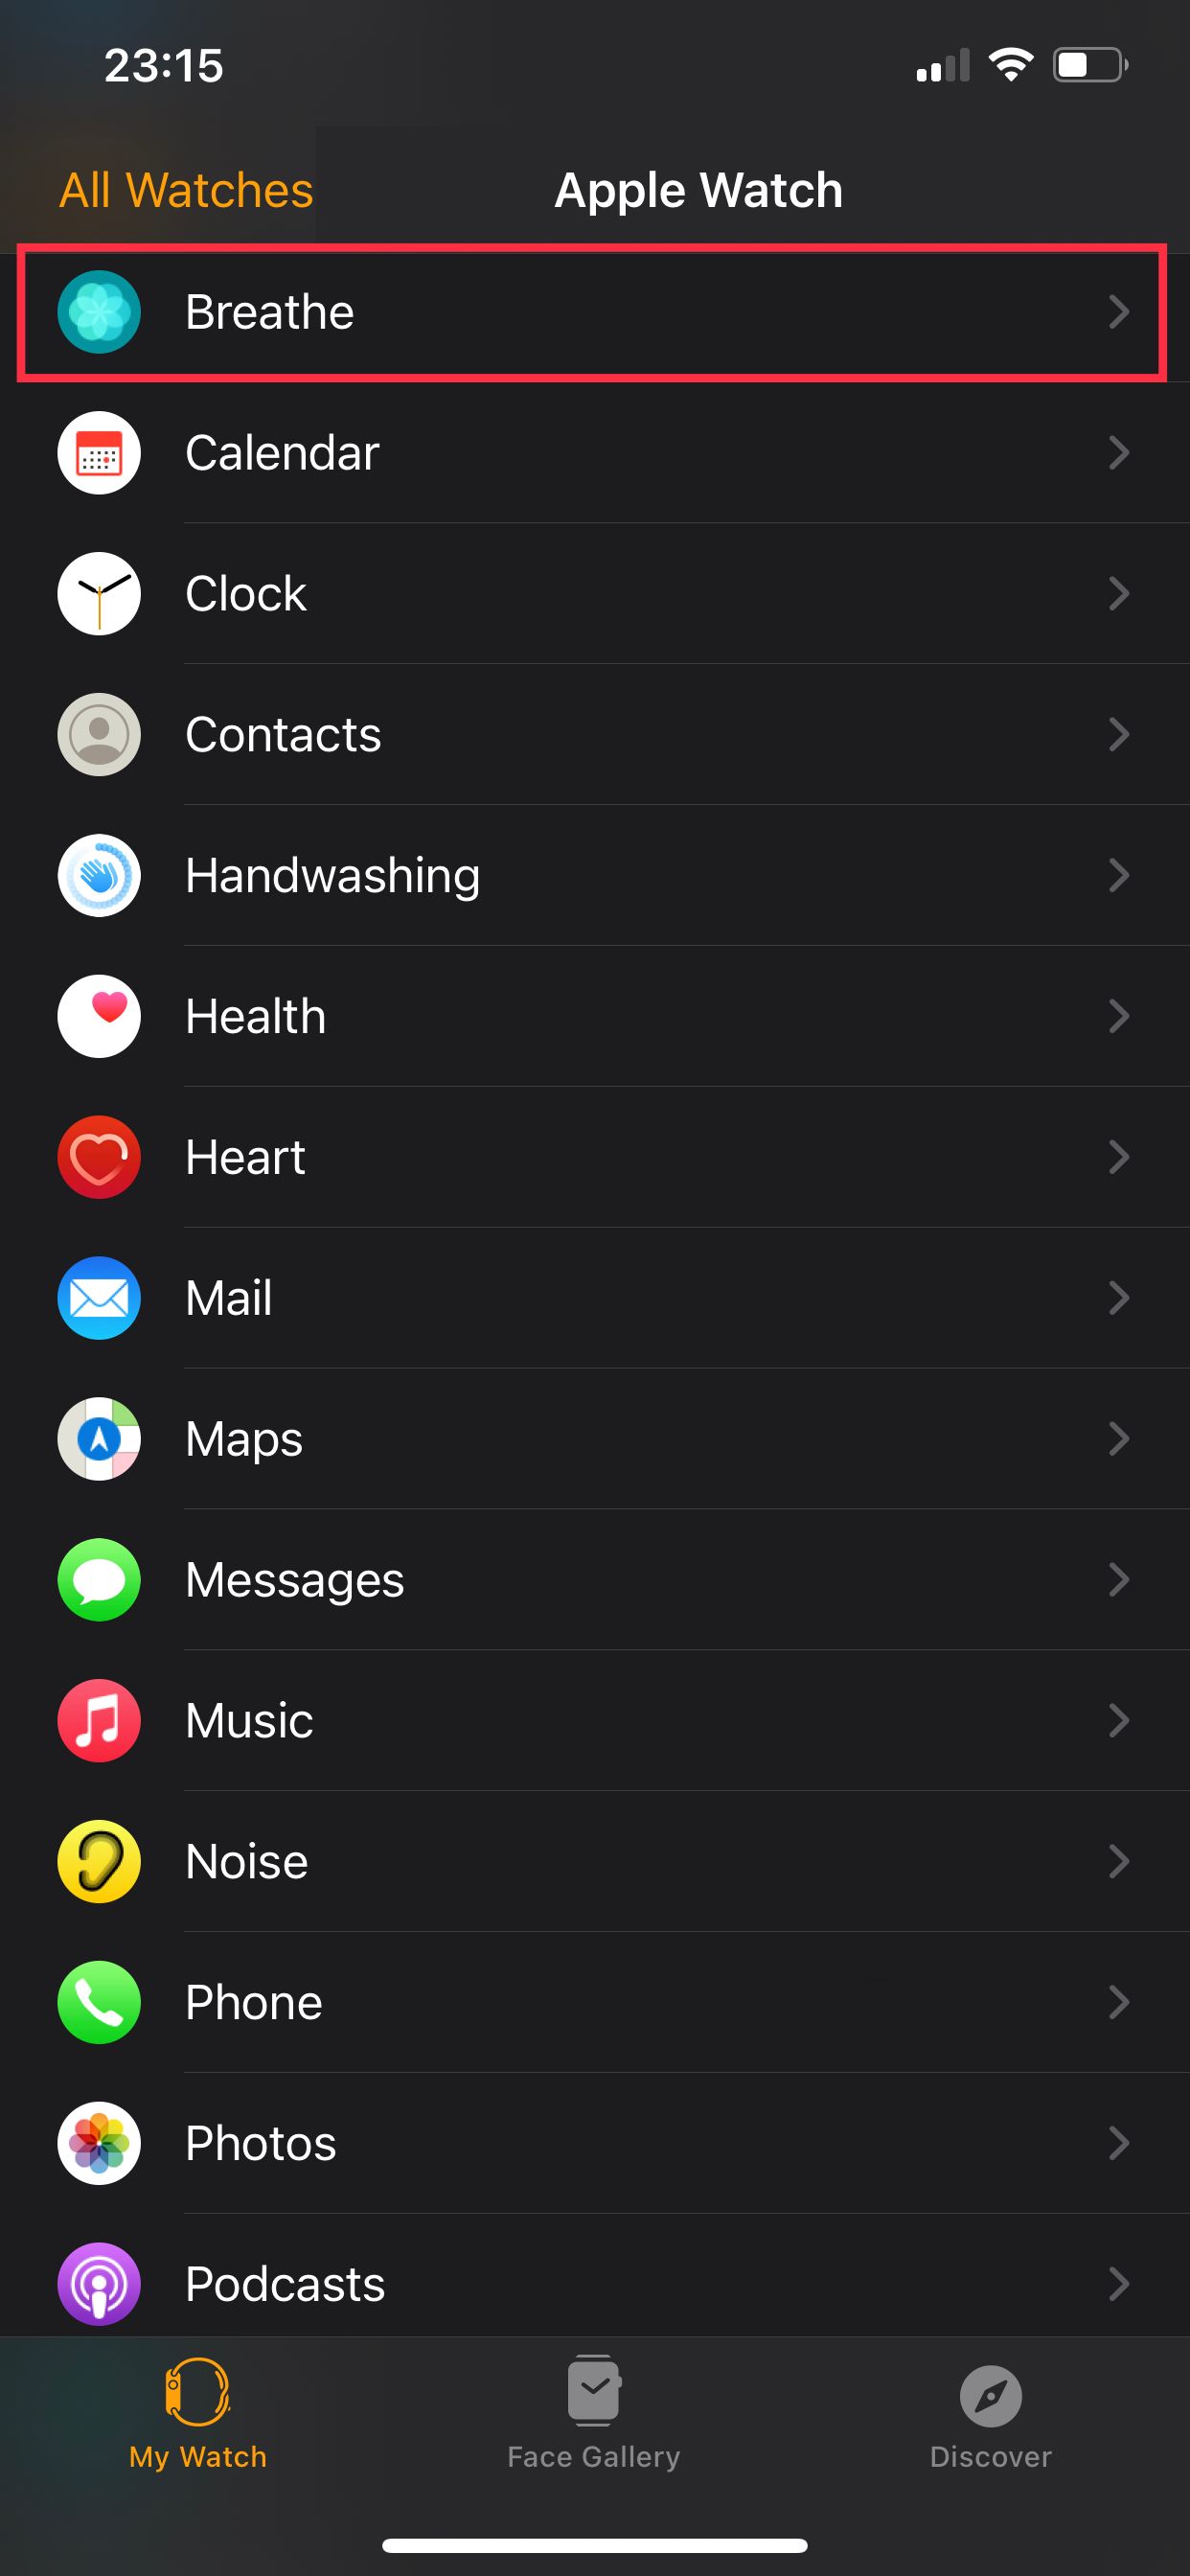 Breathe app settings in the Watch app.